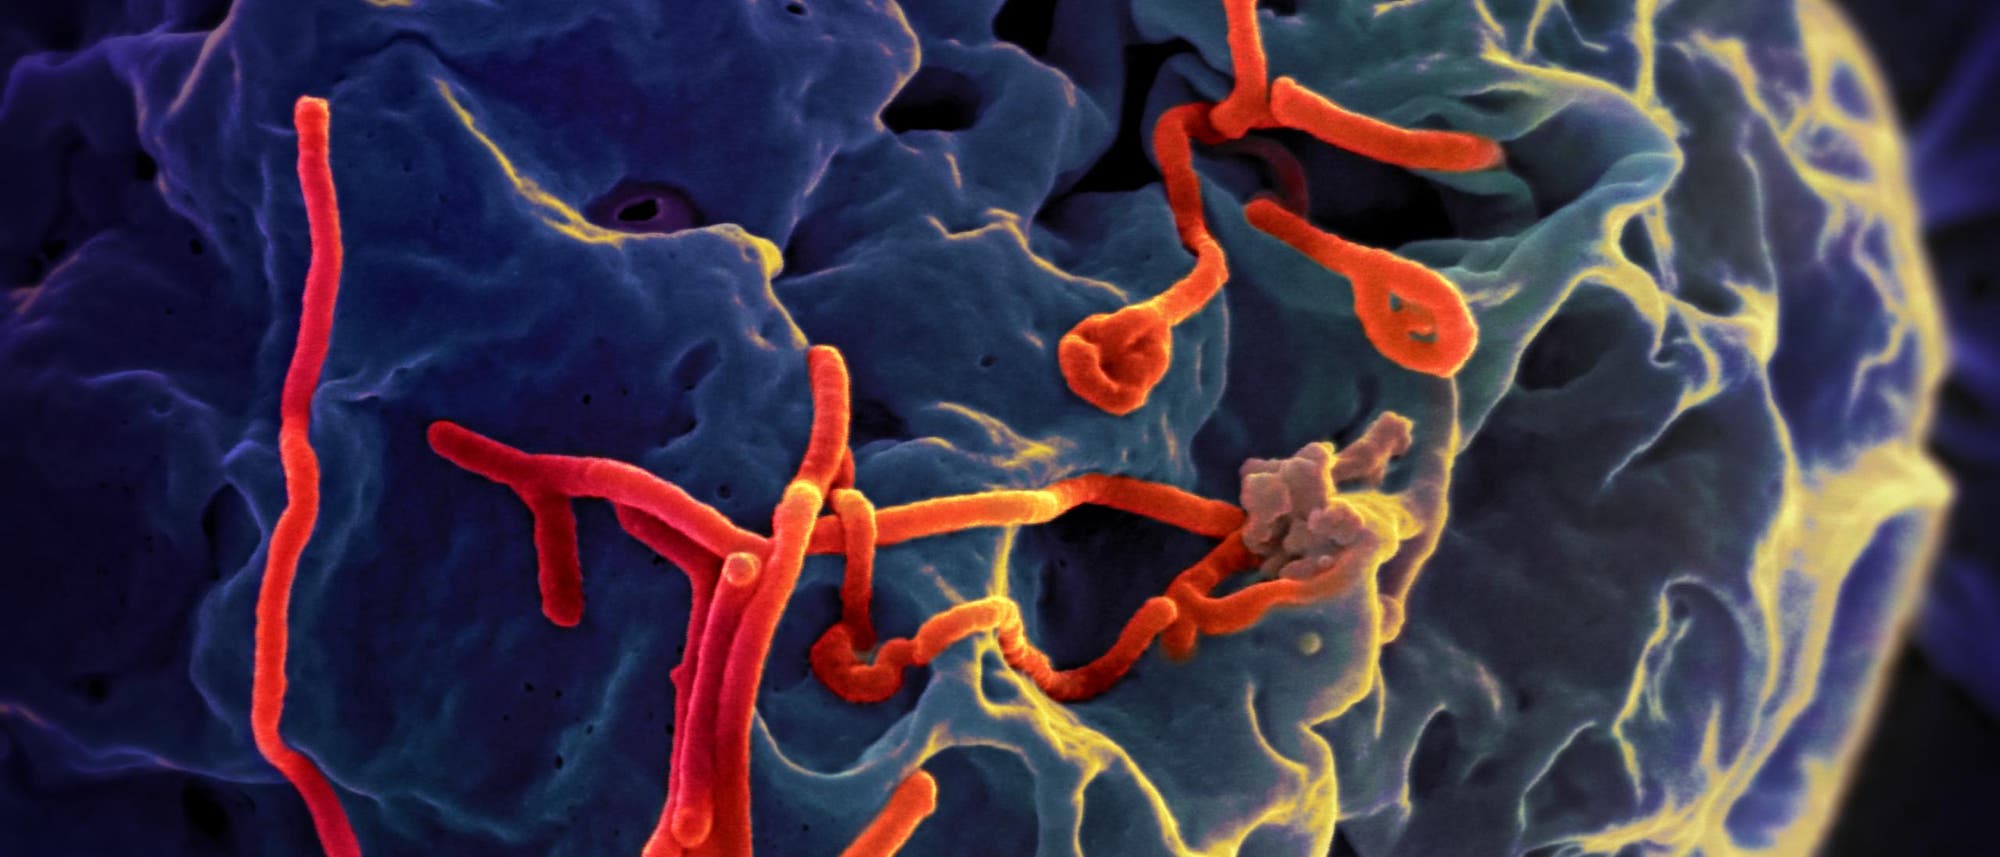 Ebolaviren in infizierter Nierenzelle